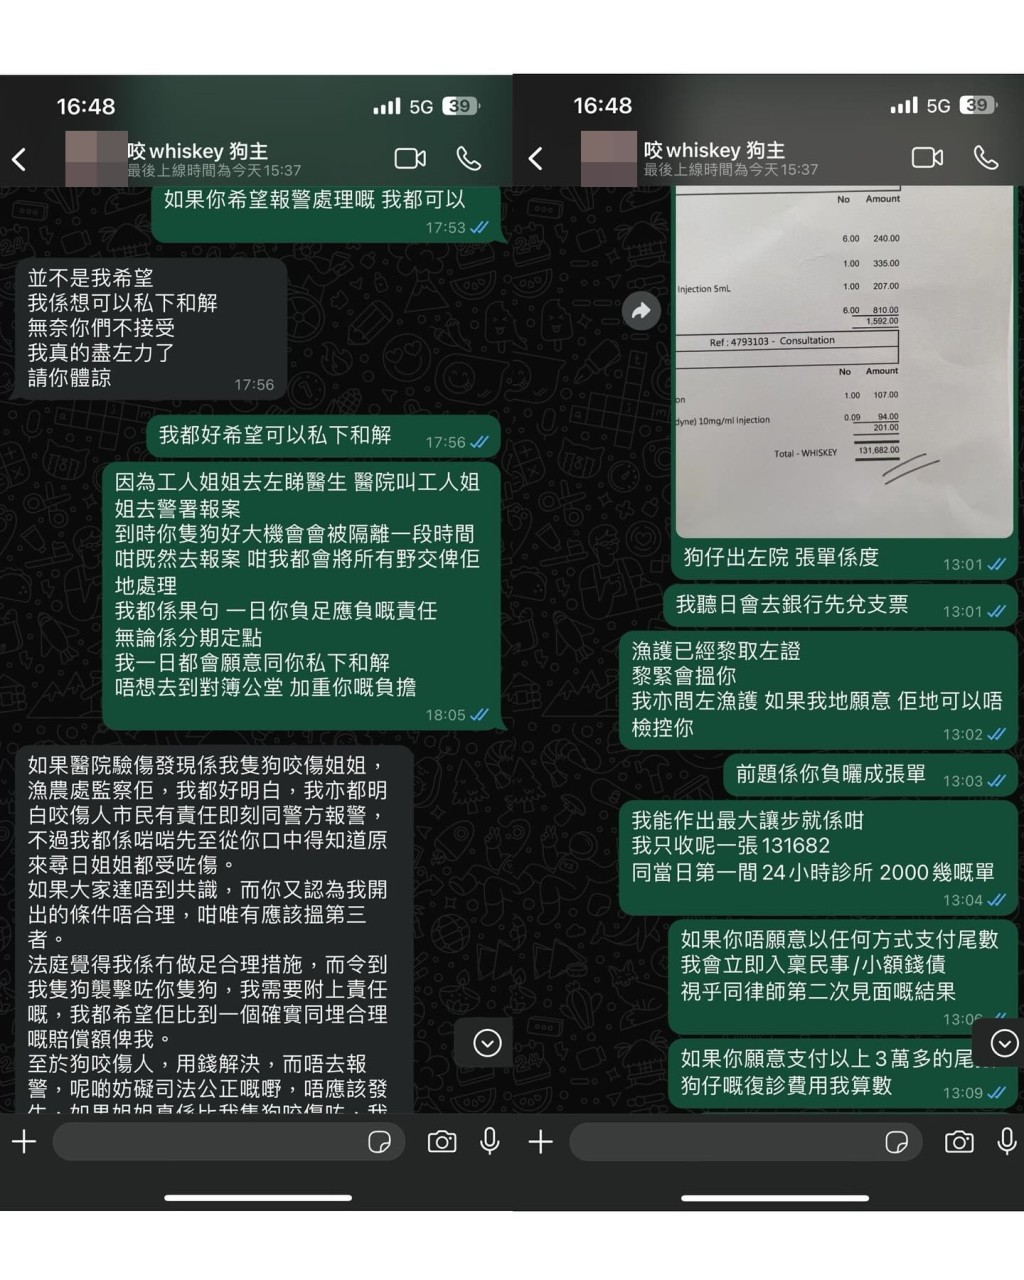 李亦喬指與不介意公開對方WhatsApp對話內容，有需要全部公開也可以。